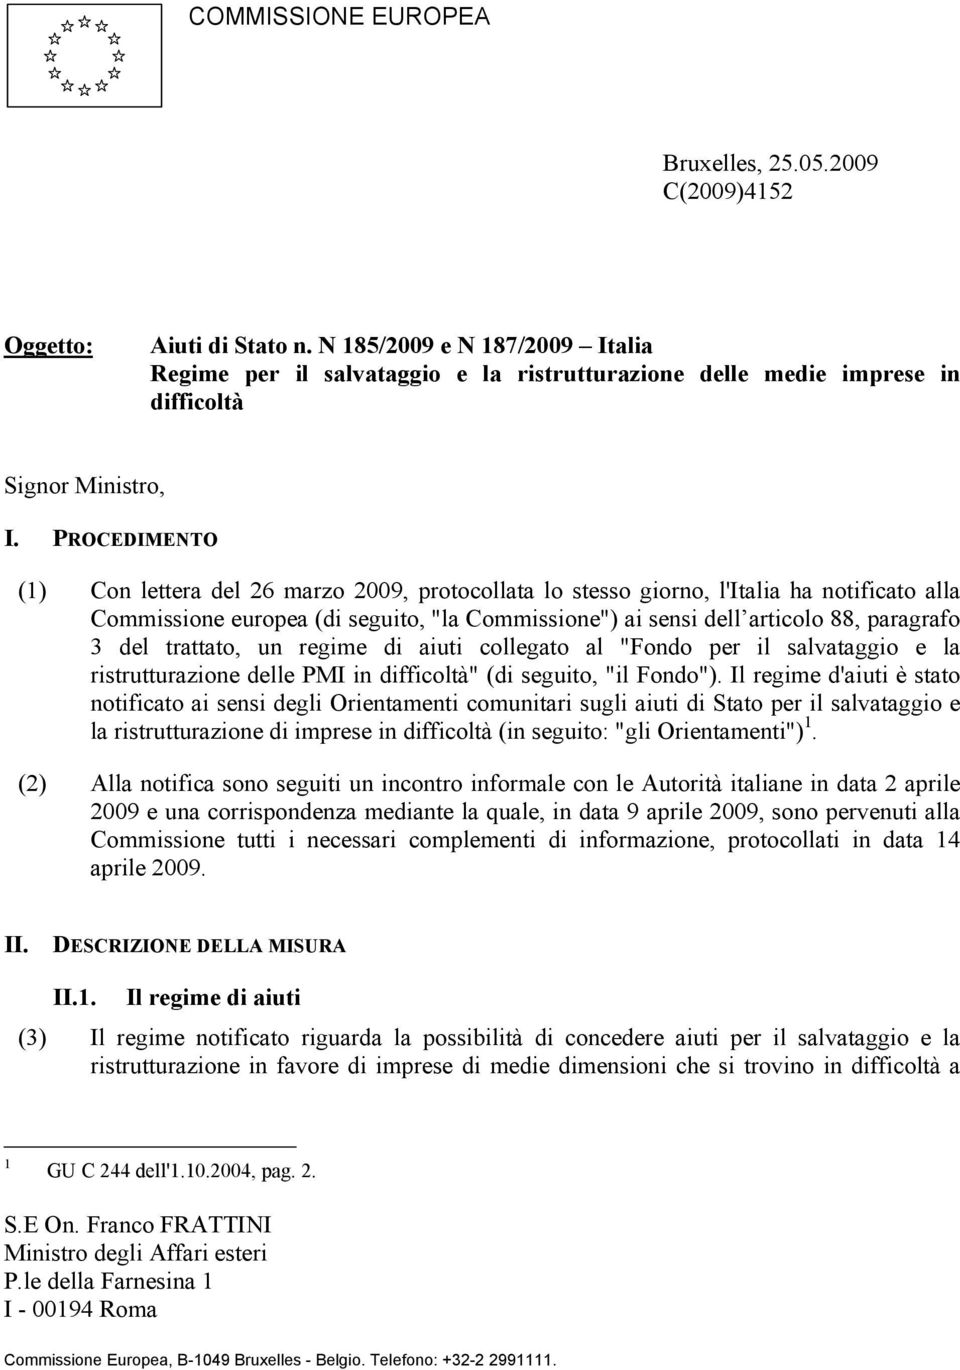 PROCEDIMENTO (1) Con lettera del 26 marzo 2009, protocollata lo stesso giorno, l'italia ha notificato alla Commissione europea (di seguito, "la Commissione") ai sensi dell articolo 88, paragrafo 3